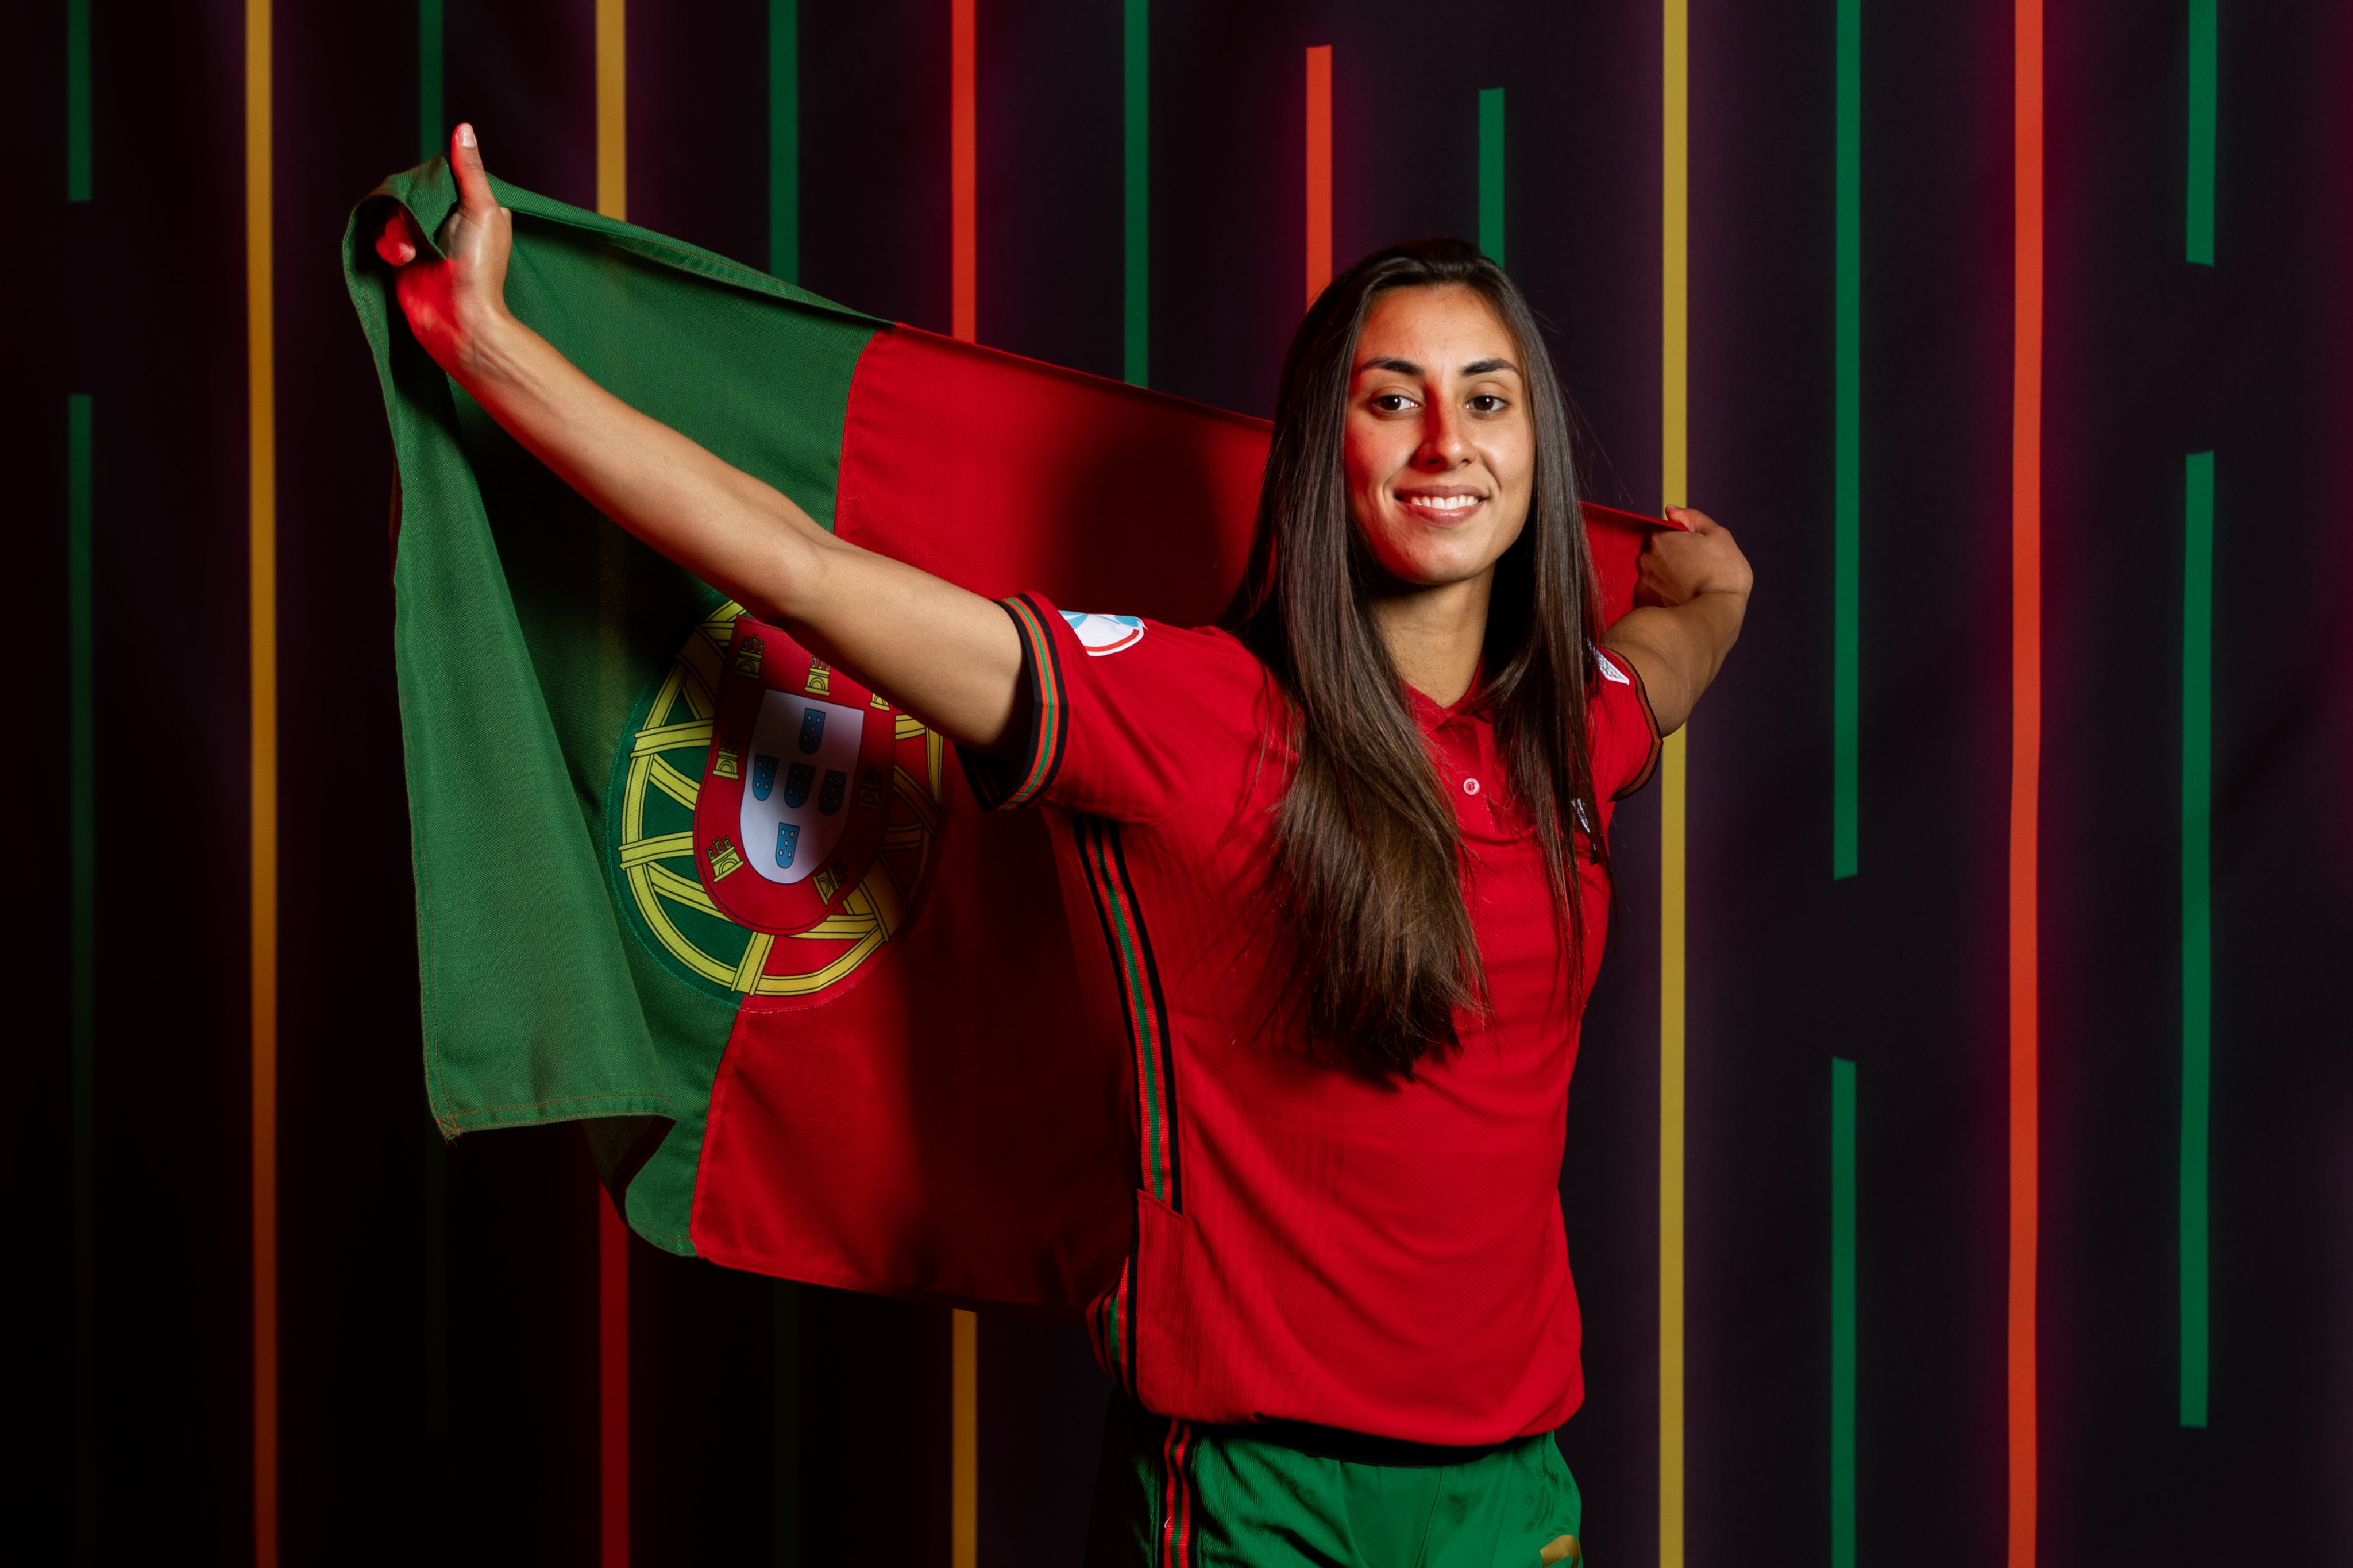 Carole Costa regressa para últimos jogos na Liga das Nações, Diana Silva de  fora - Seleção Nacional Feminino - SAPO Desporto